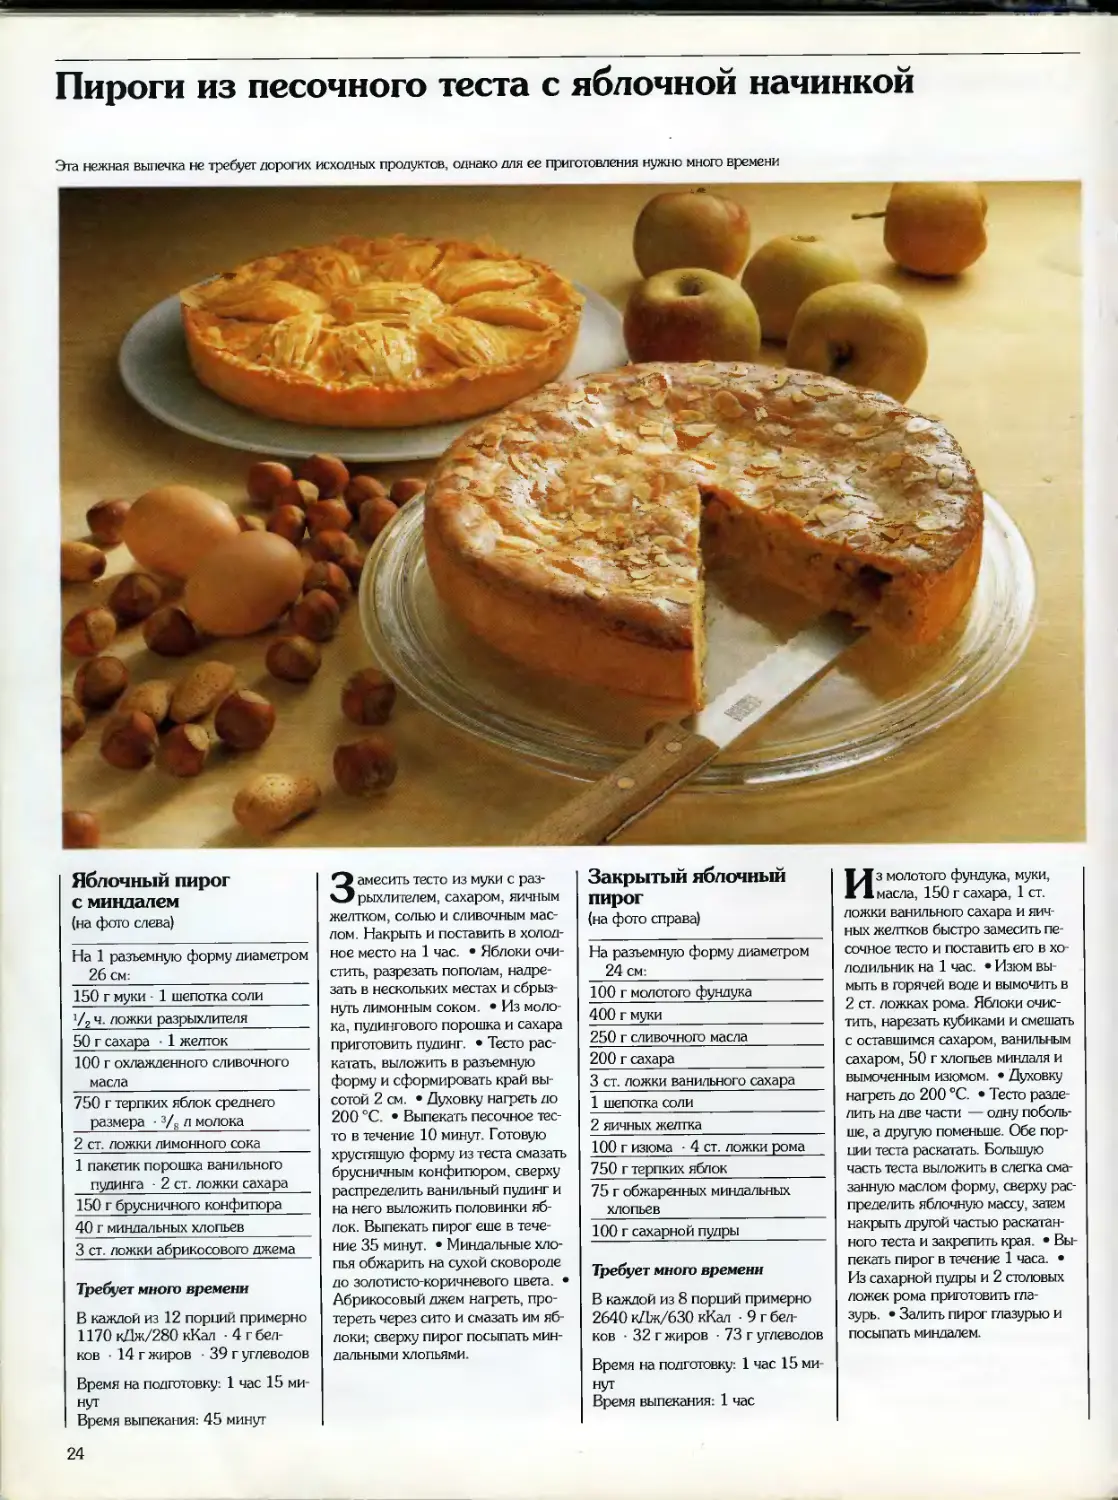 Рецепты приготовления легких пирогов. Рецепт пирога в картинках. Рецепты пирогов в картинках. Пирог рецепт картинка. Рецепты тортов из журналов.